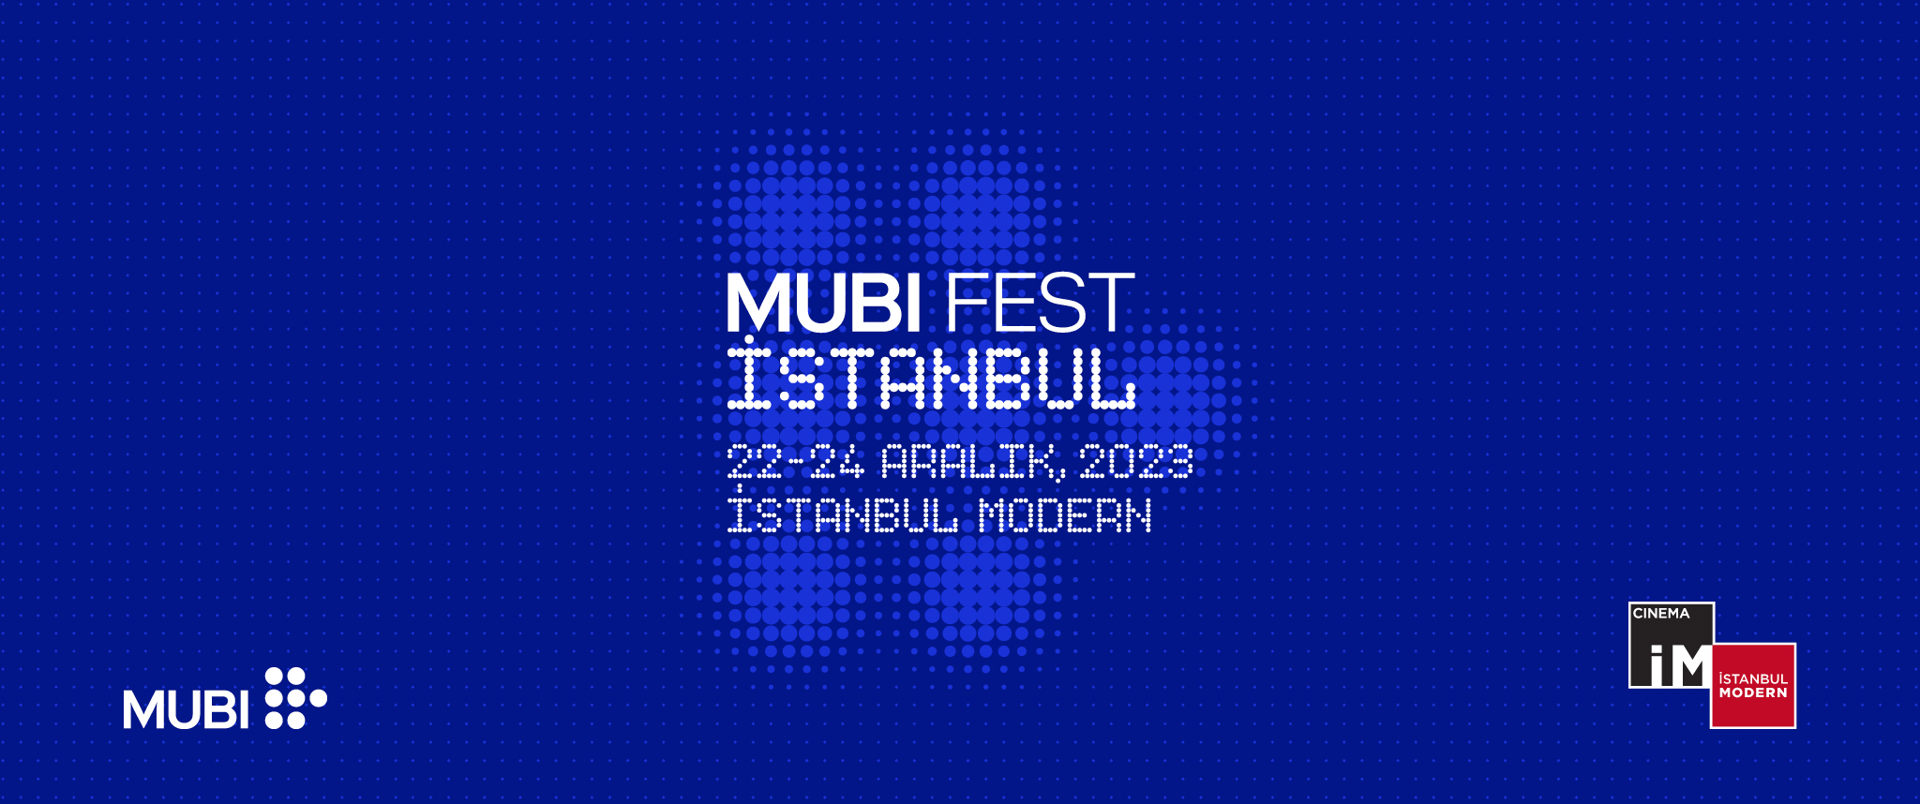 MUBI FEST ISTANBUL